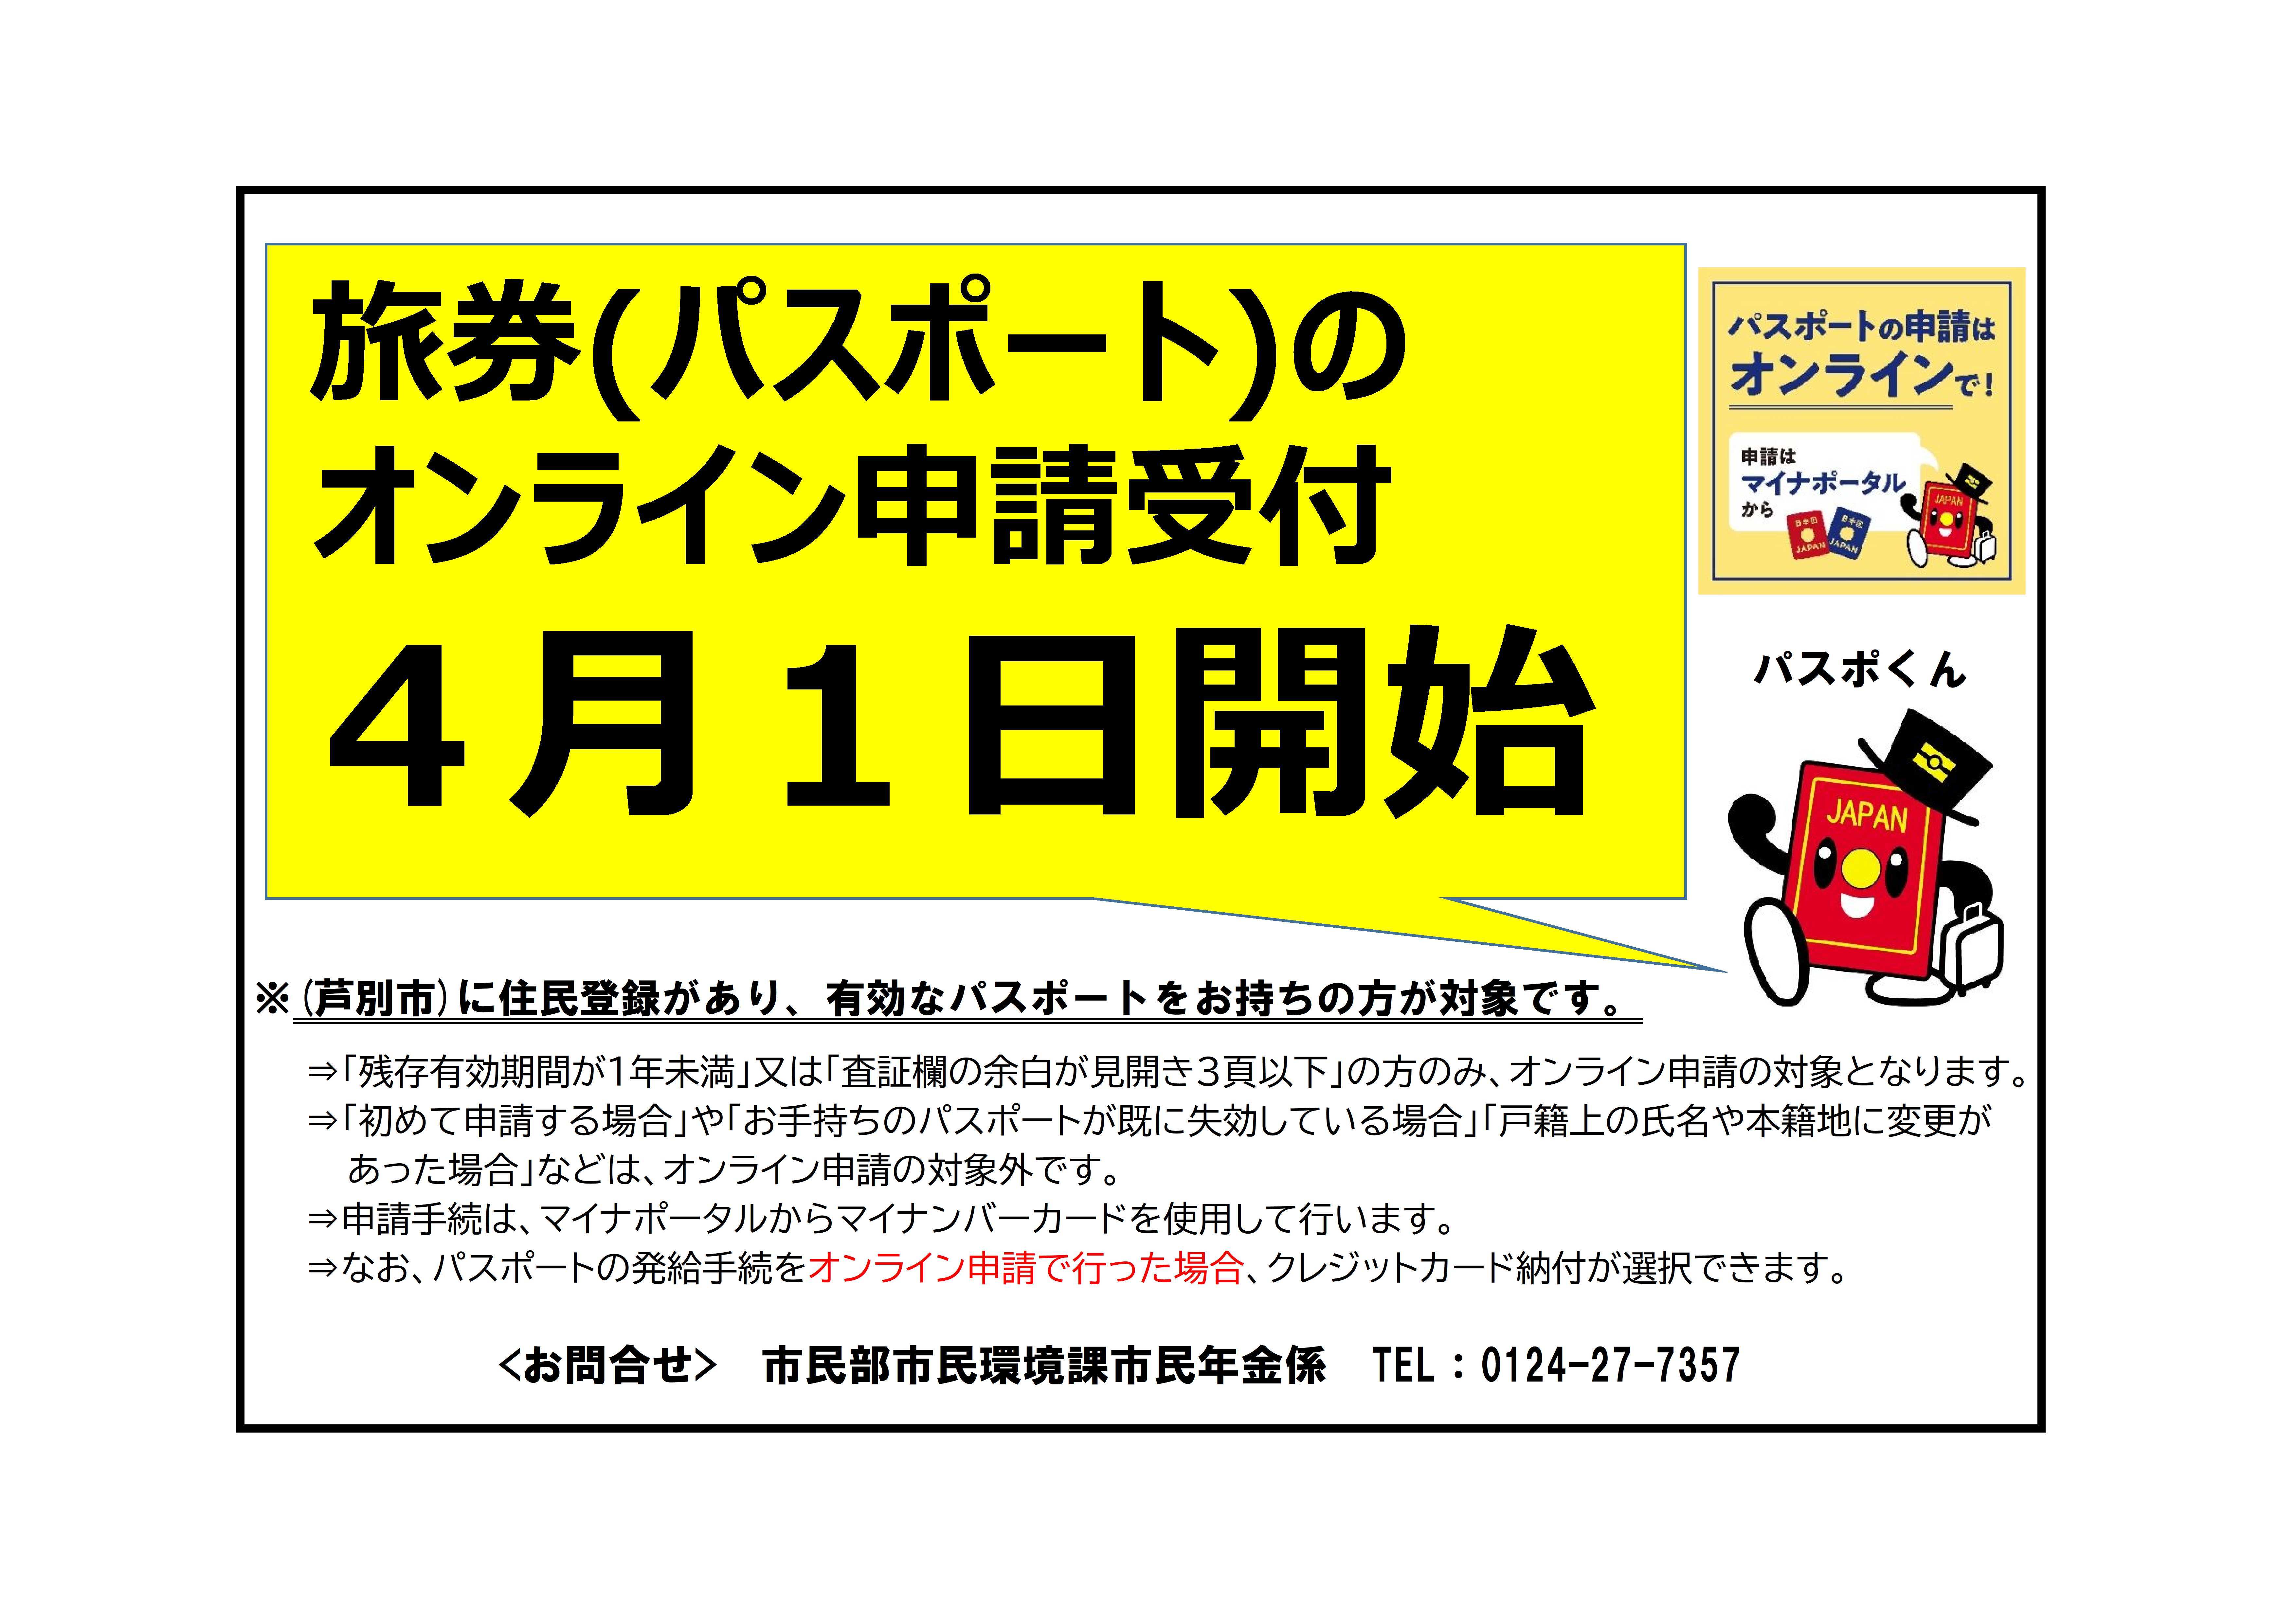 05_【広報活用データ】広報案_旅券オンライン申請.jpg